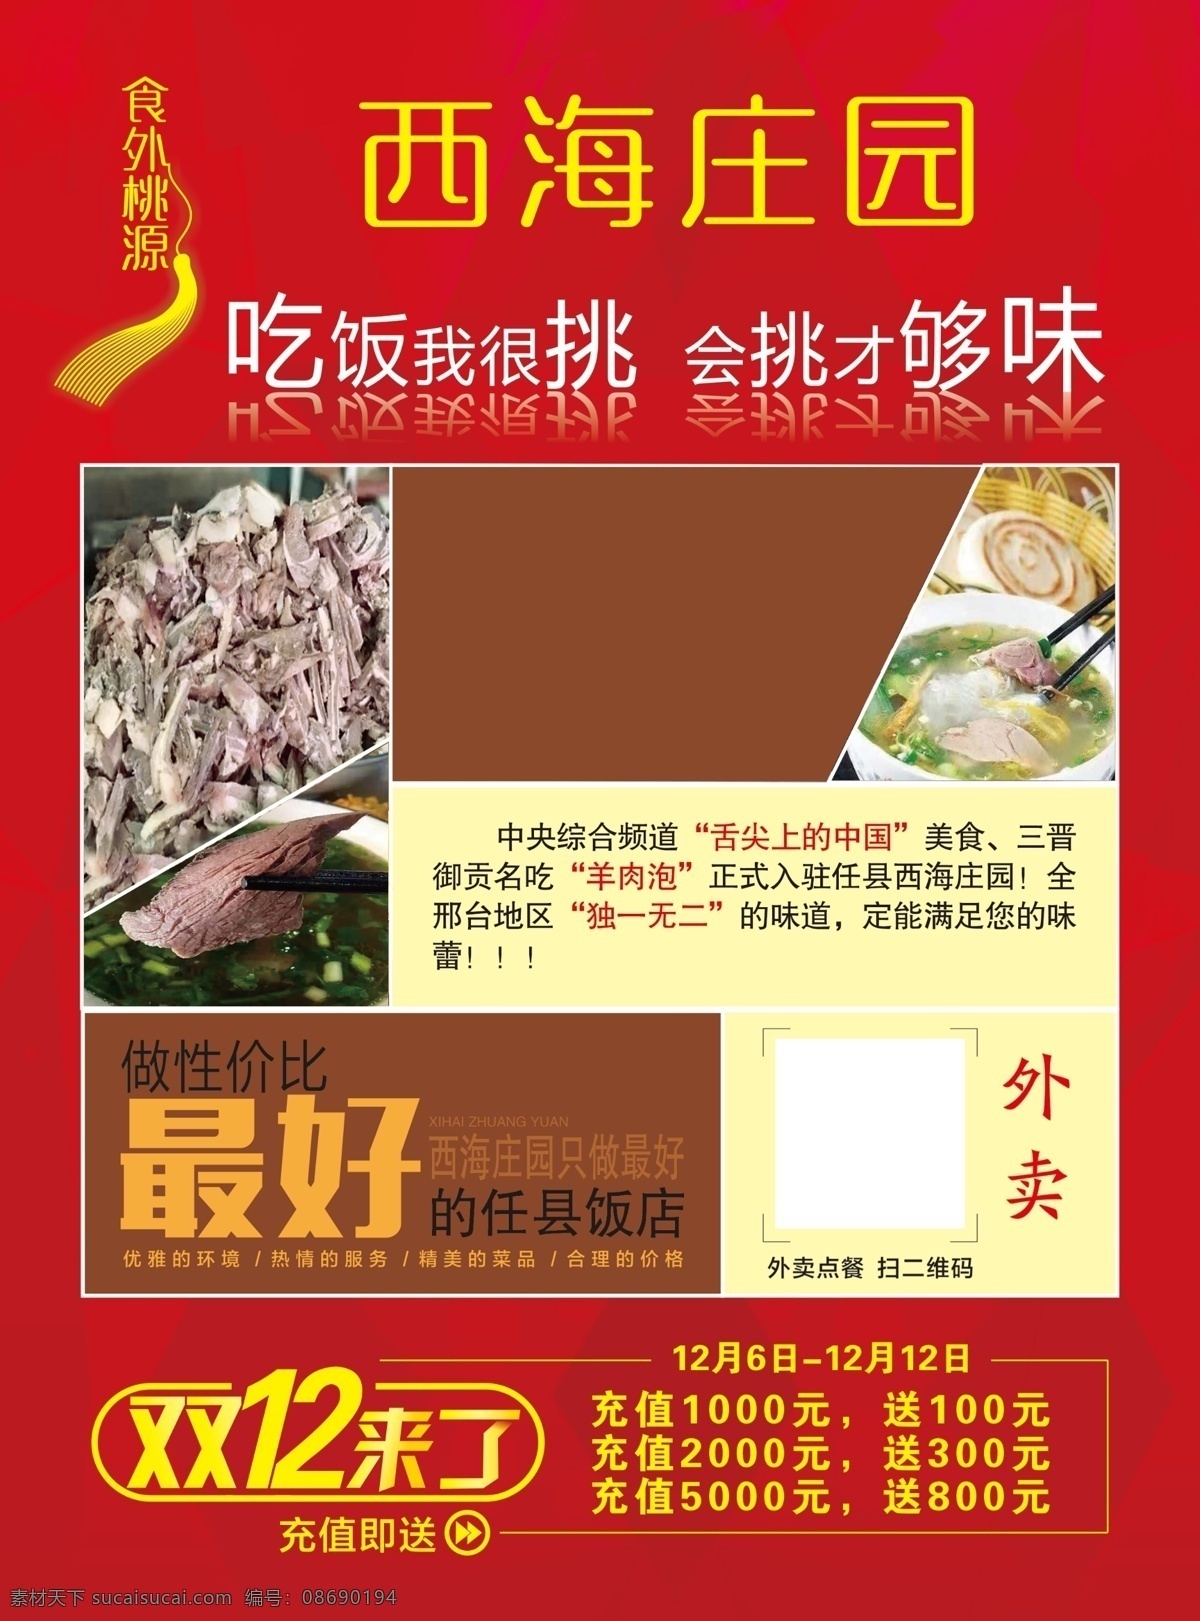 饭店 彩页 烧烤 肉类 羊肉泡馍 菜单类 菜单菜谱